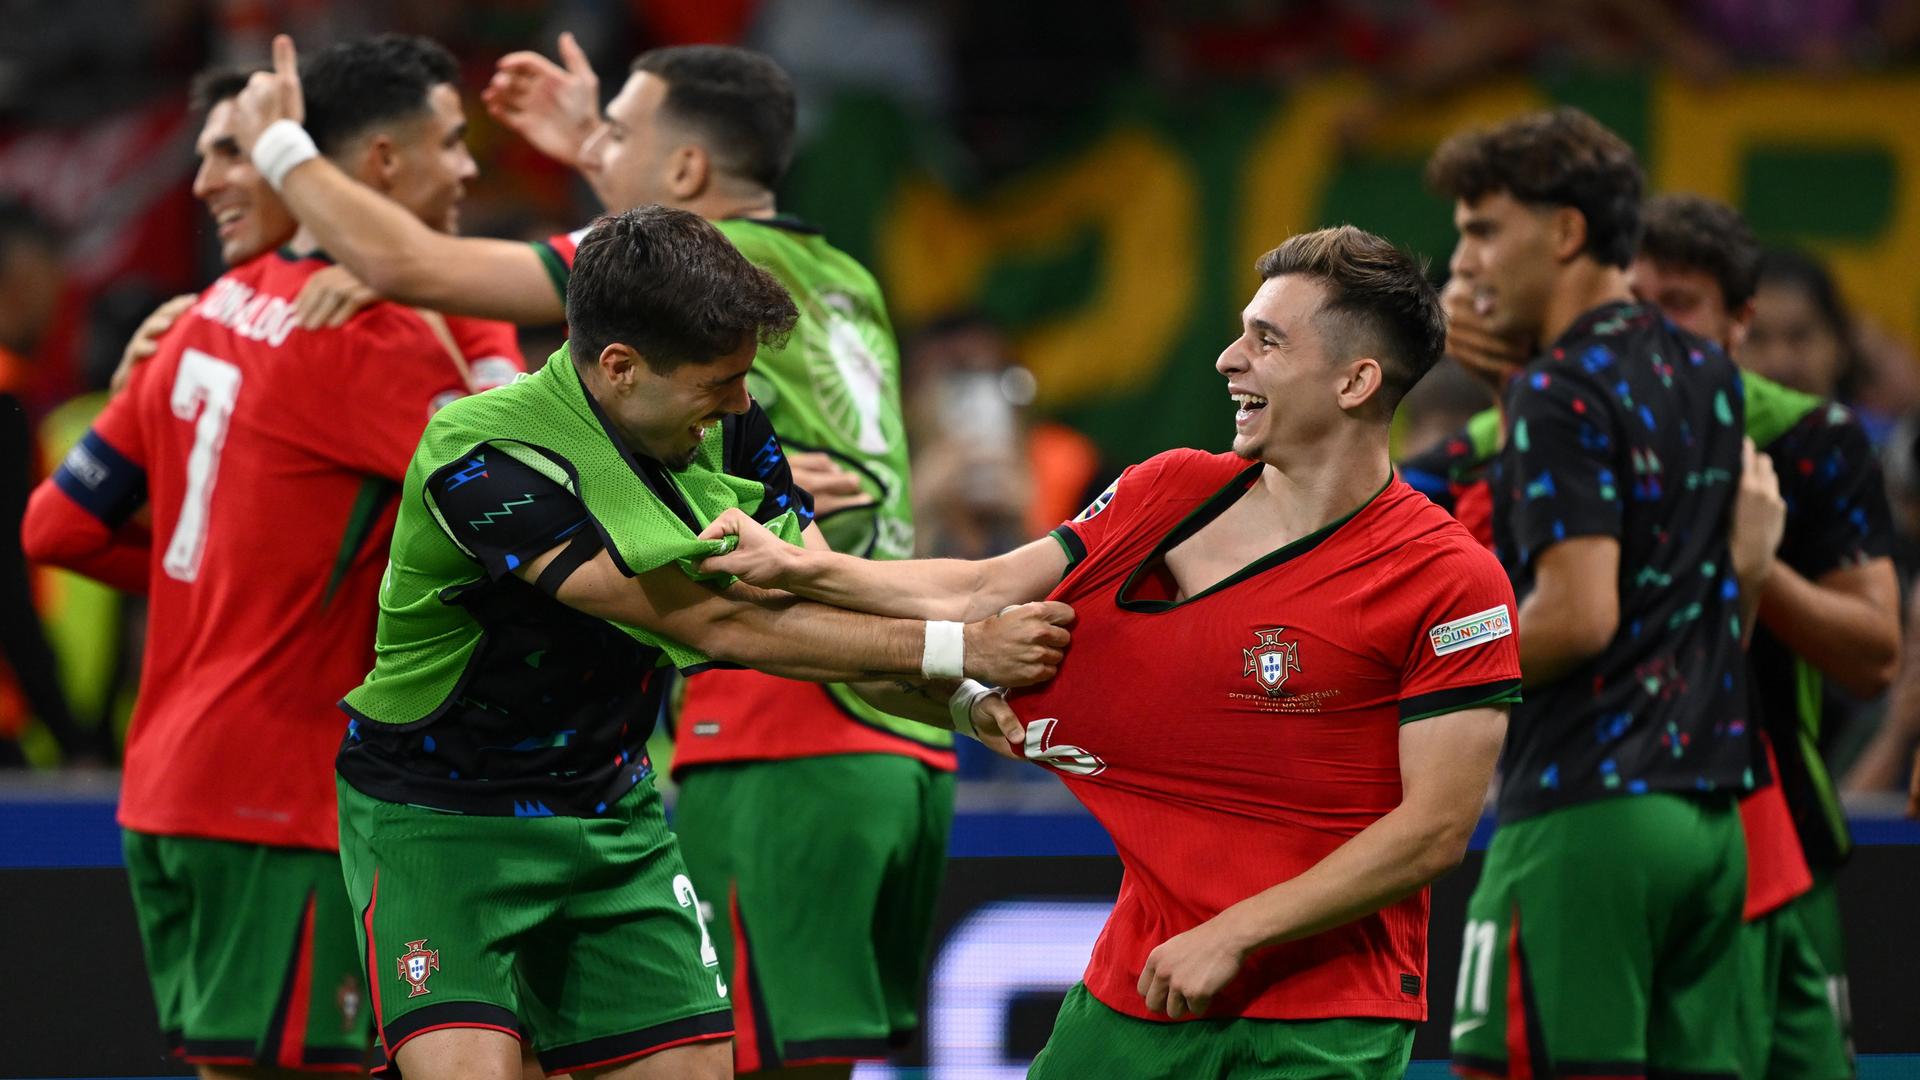 Ein Ersatzspieler mit grüner Warnweste zieht freudig am roten Trikot des Spielers  Francisco Conceiçãos (rechts vorne), der lacht. Dahinter feiern weitere Spieler den Sieg. 